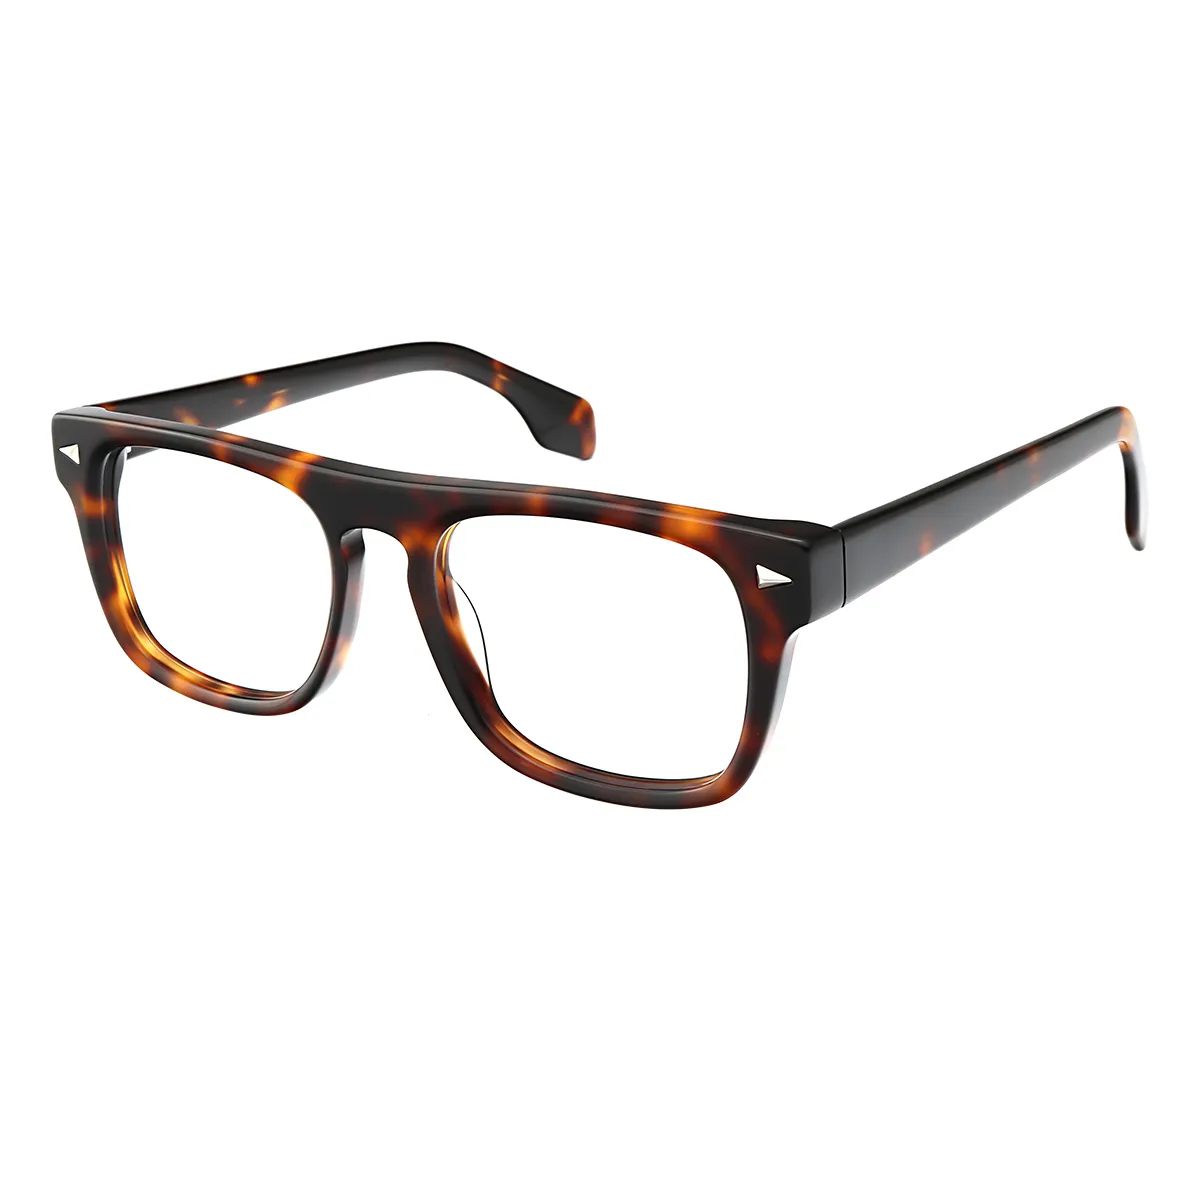 Carlyle - Square Tortoiseshell Glasses for Men & Women - EFE